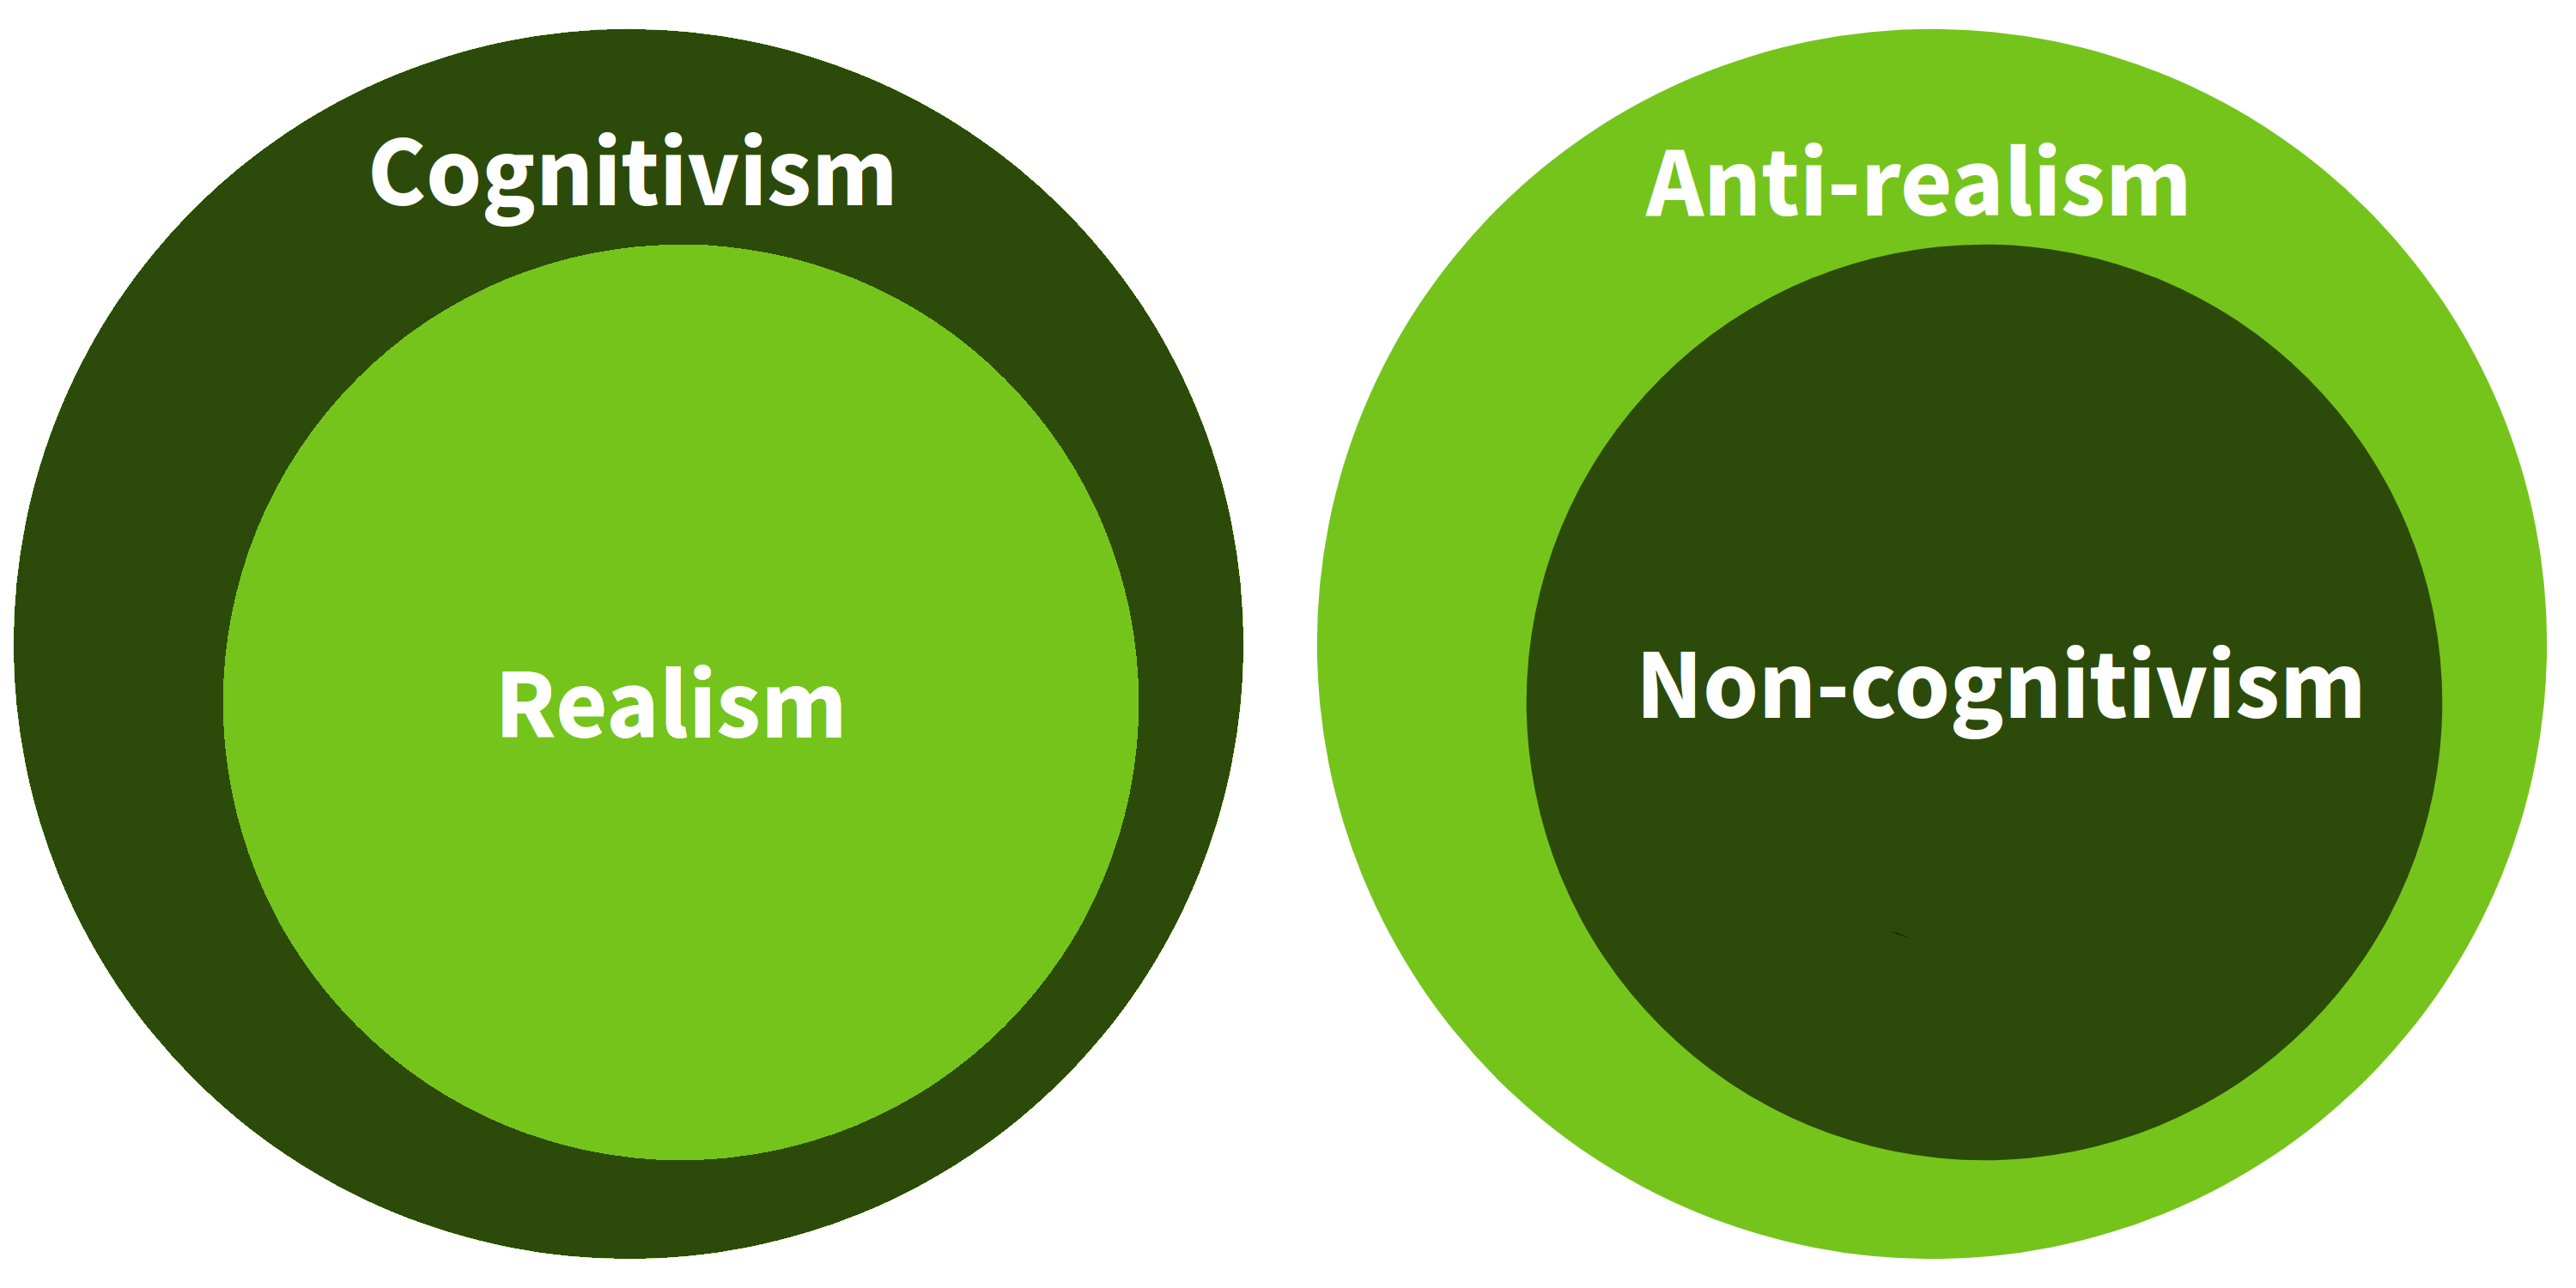 cognitivism, non-cognitivism, realism, anti-realism venn diagram